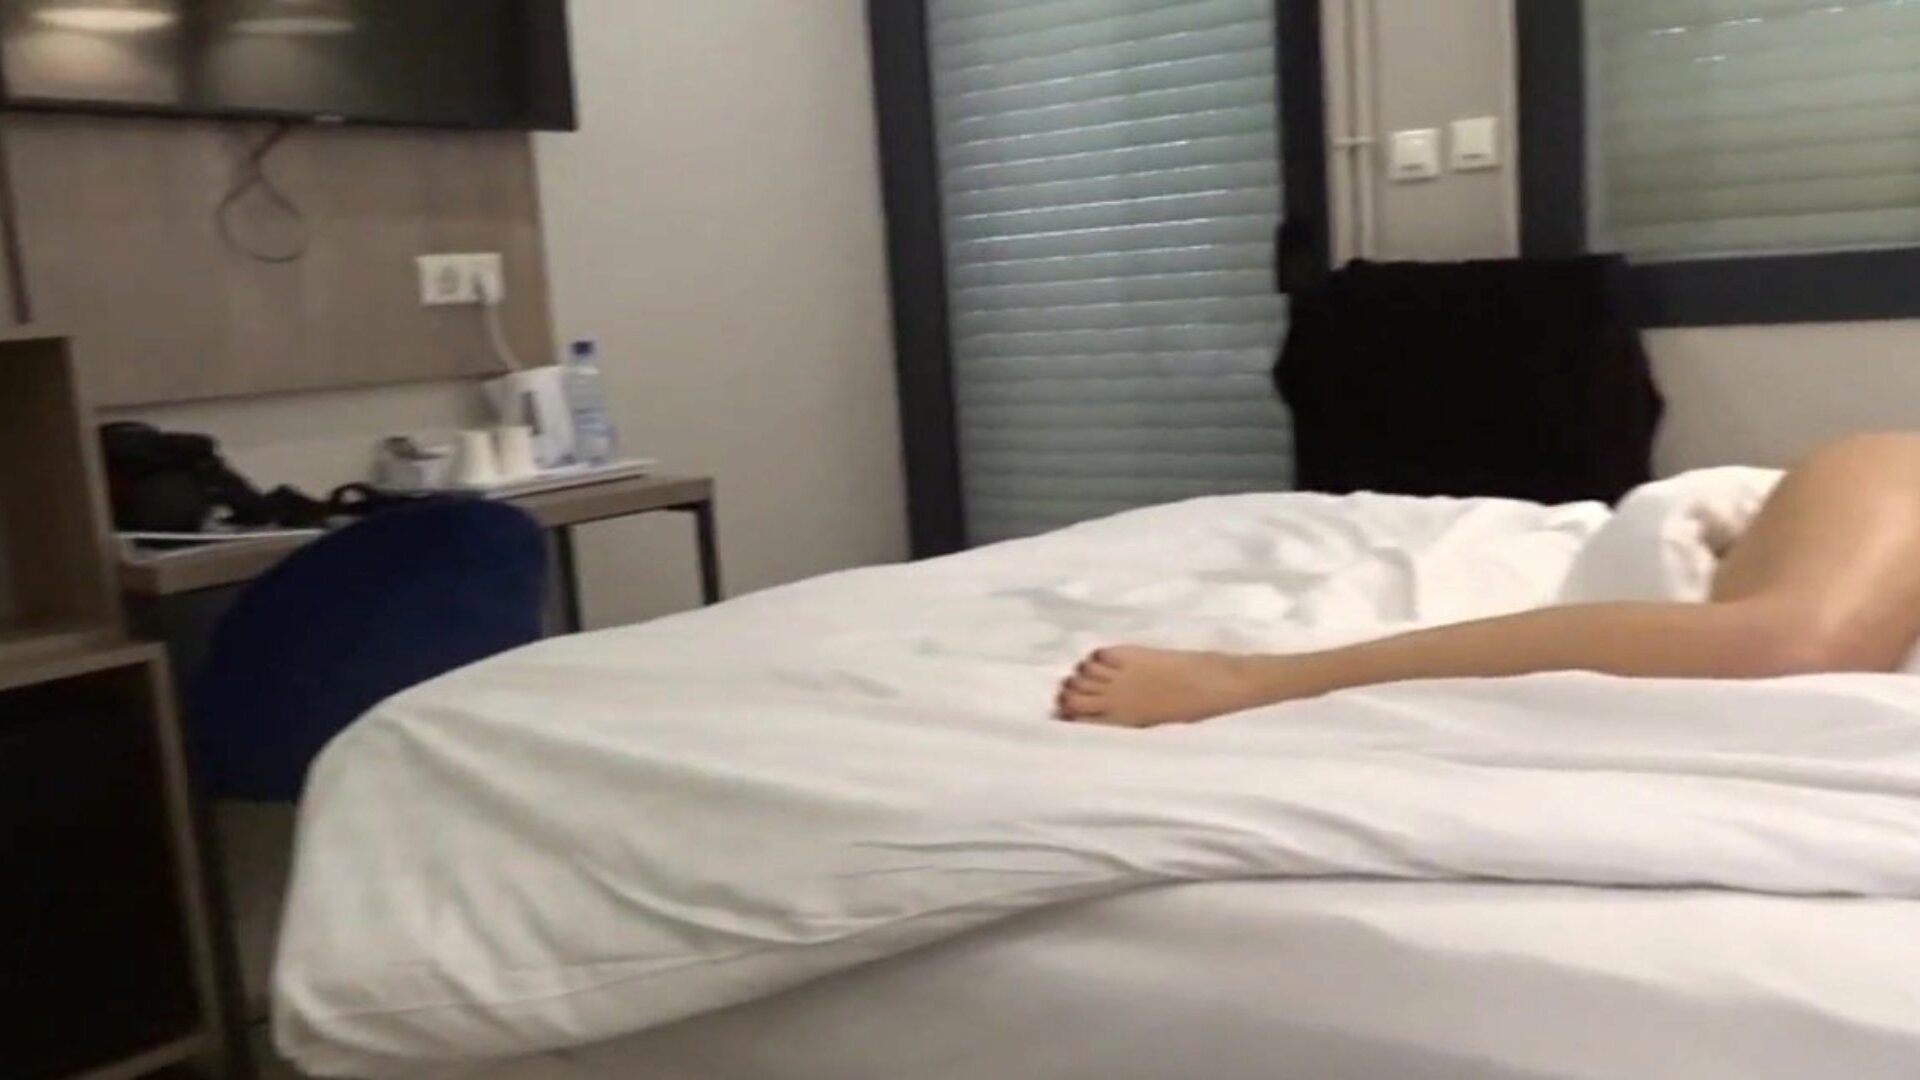 كارلا سي عارية في فيديو الفندق حيث خلعت ملابسي في سريري النهاري في غرفة ضيوف بالفندق وفي الحمام